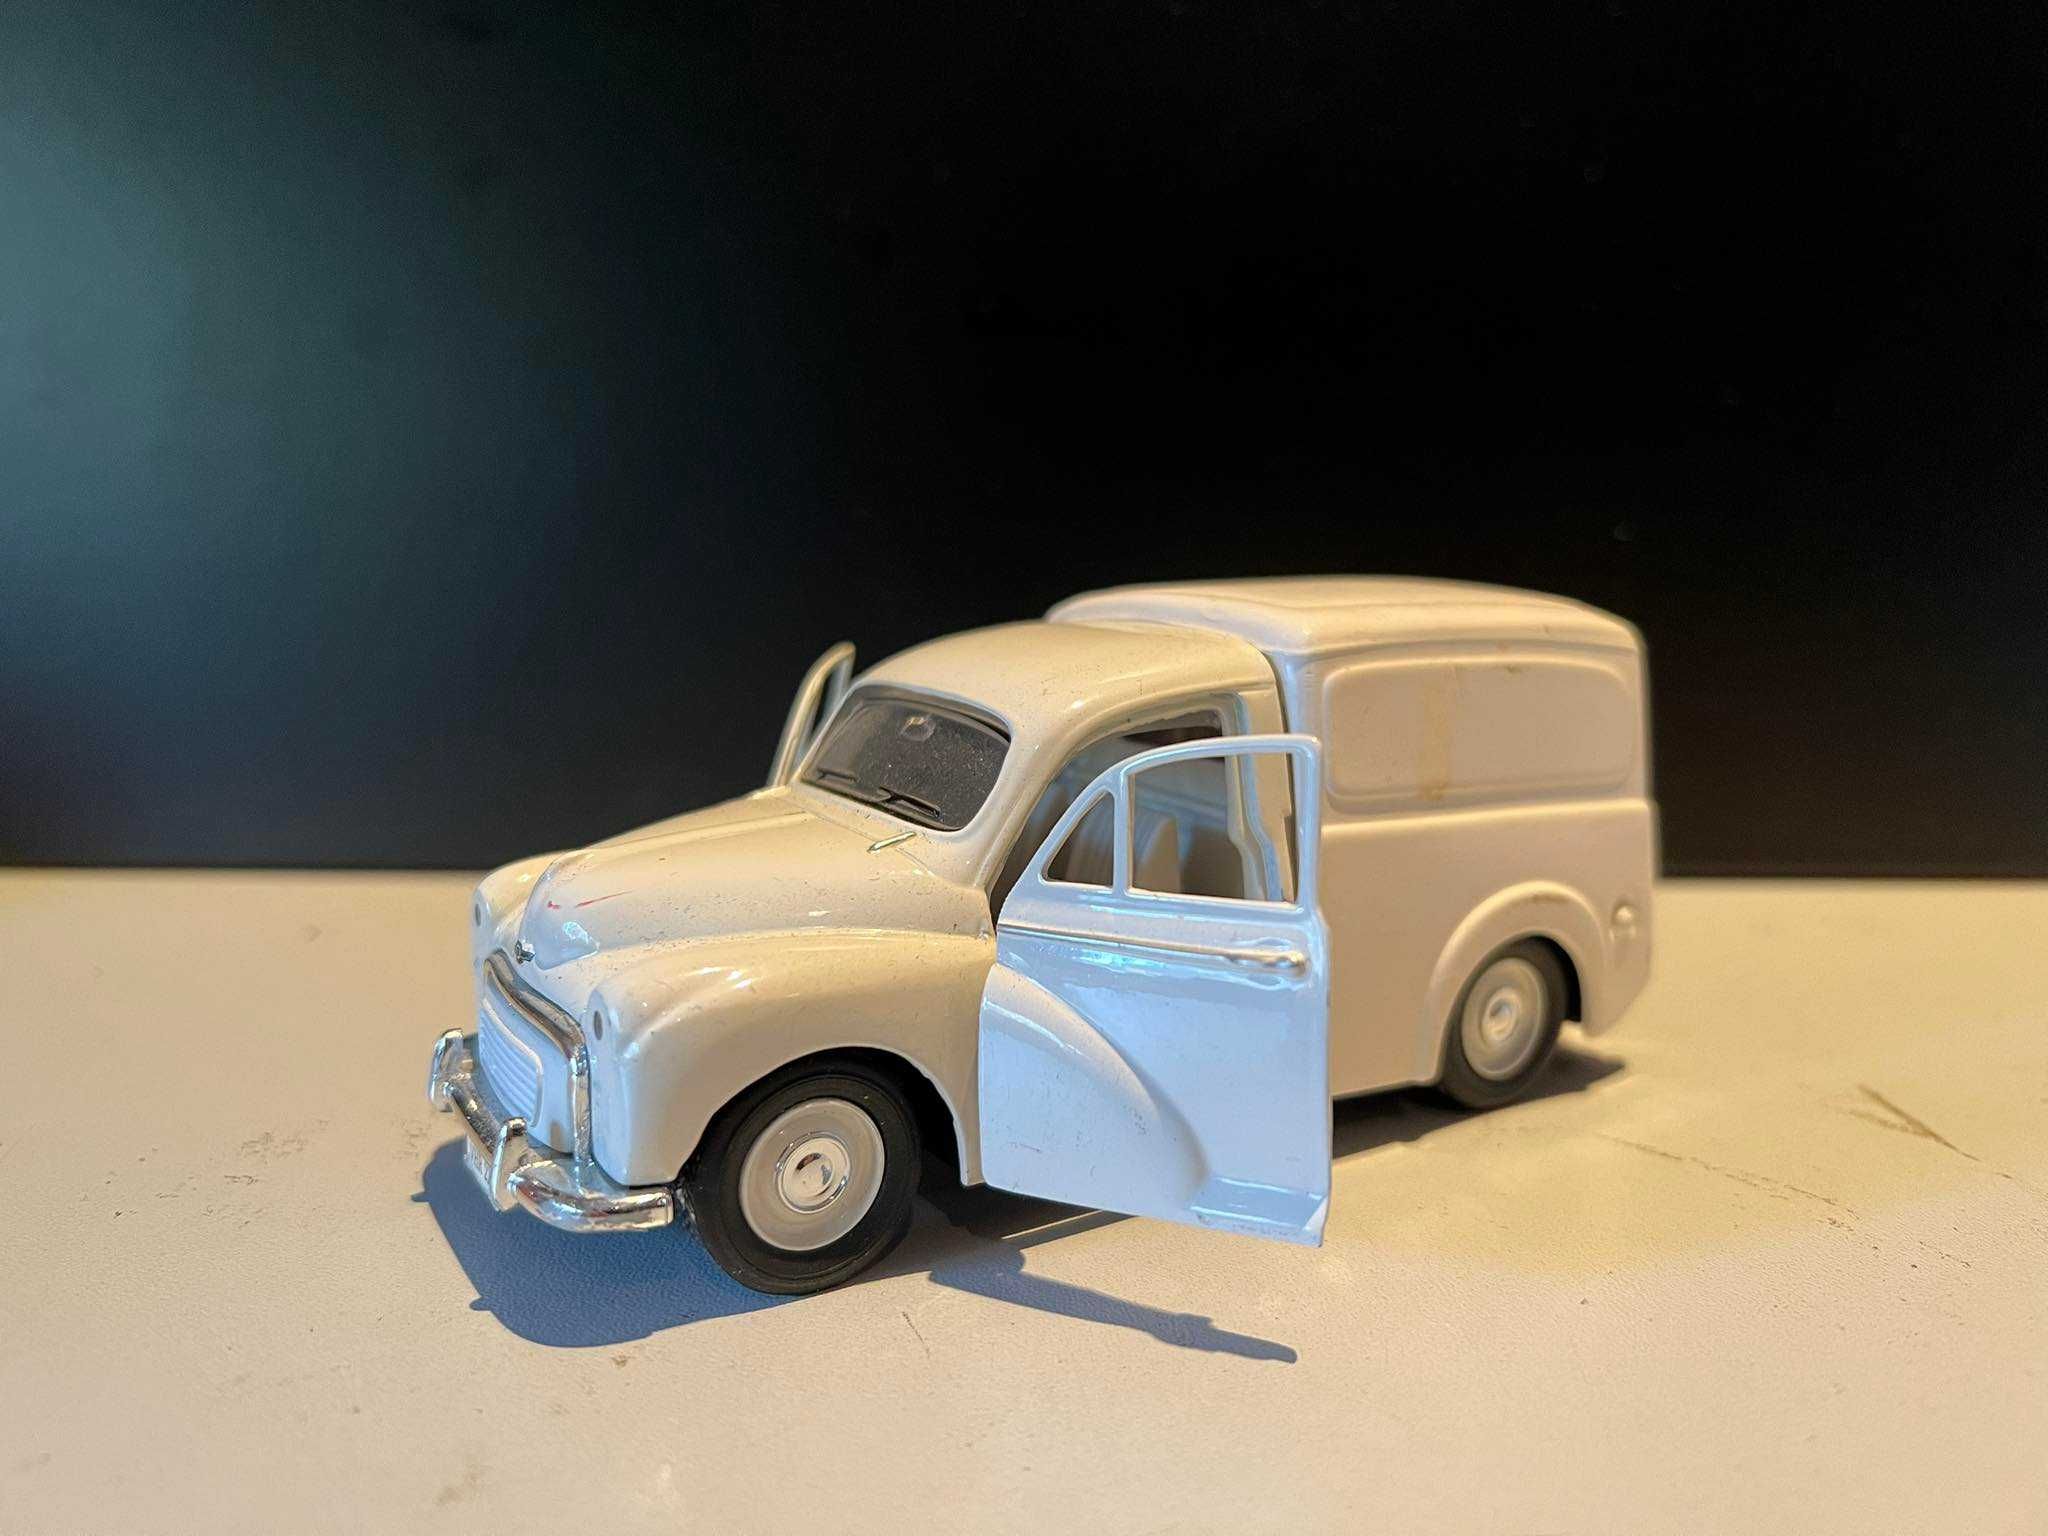 Model samochodu - samochód Morris Minor Van | Saico vintage